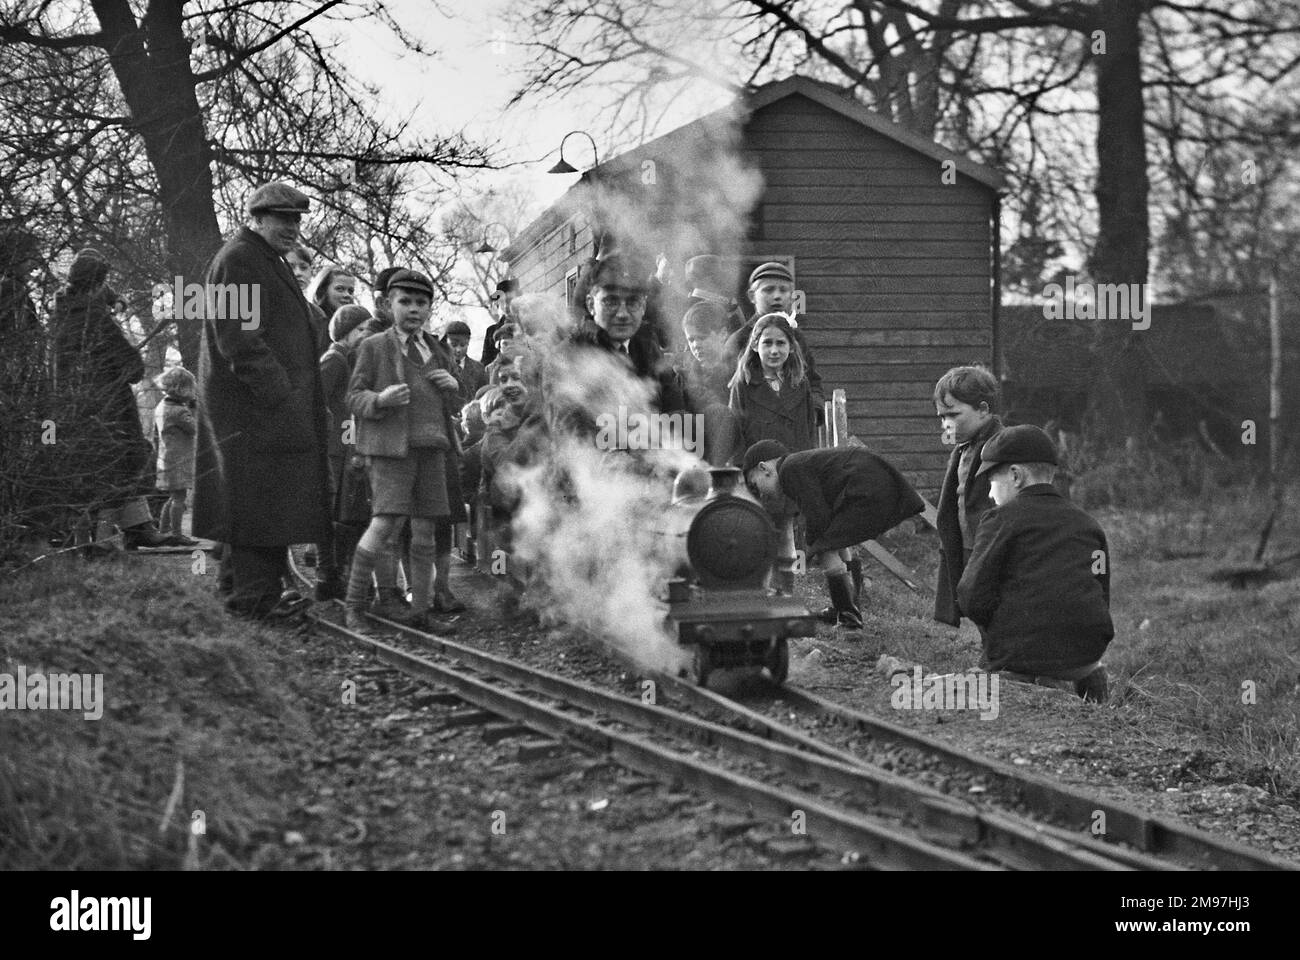 Children gathered around a miniature steam train. Stock Photo